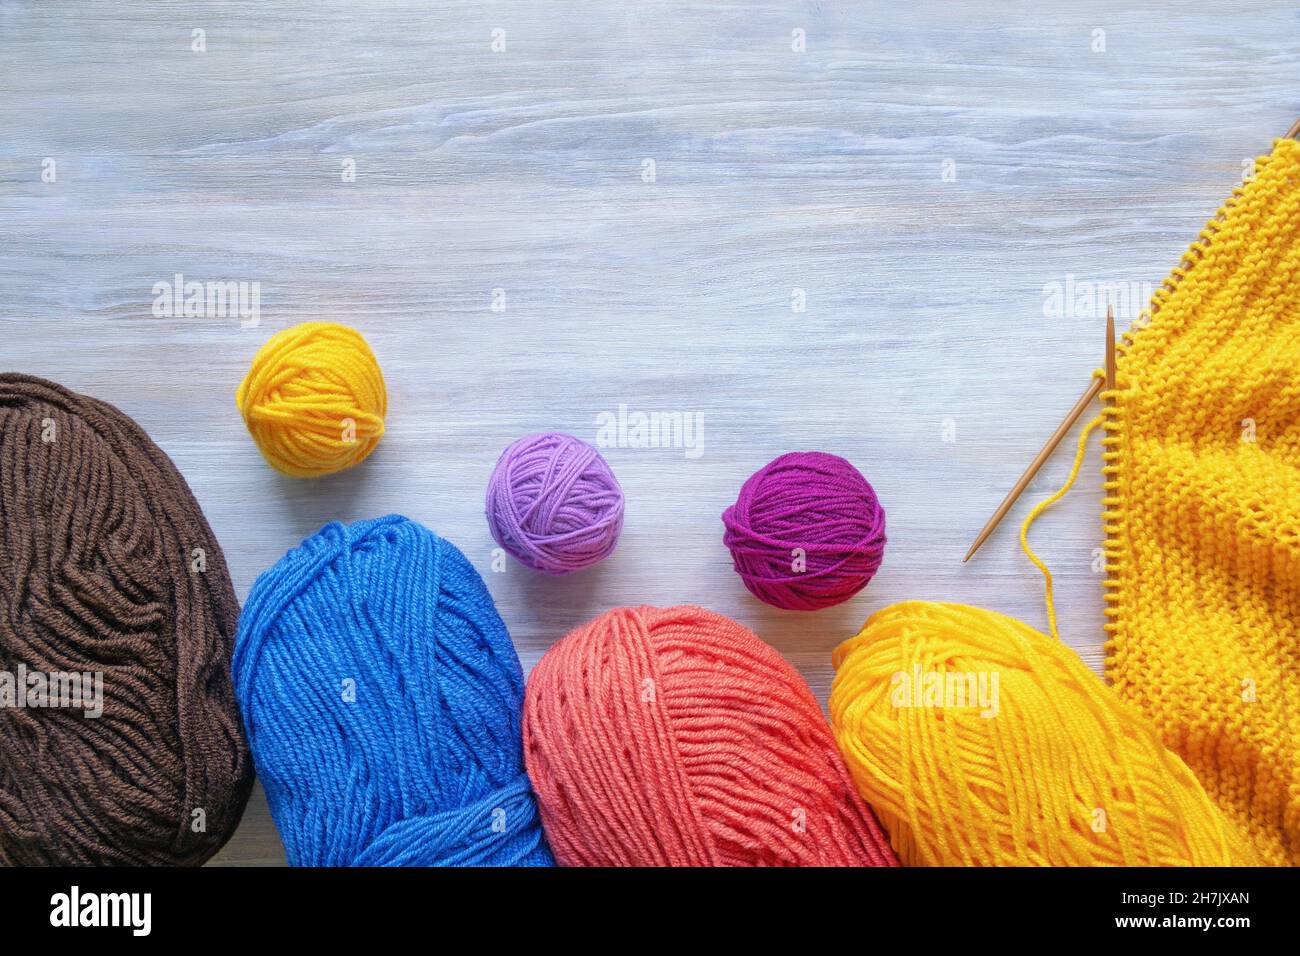 Passe-temps et concept de tricotage.Boules colorées de laine et aiguilles à tricoter sur table rustique.Espace libre pour le texte Banque D'Images